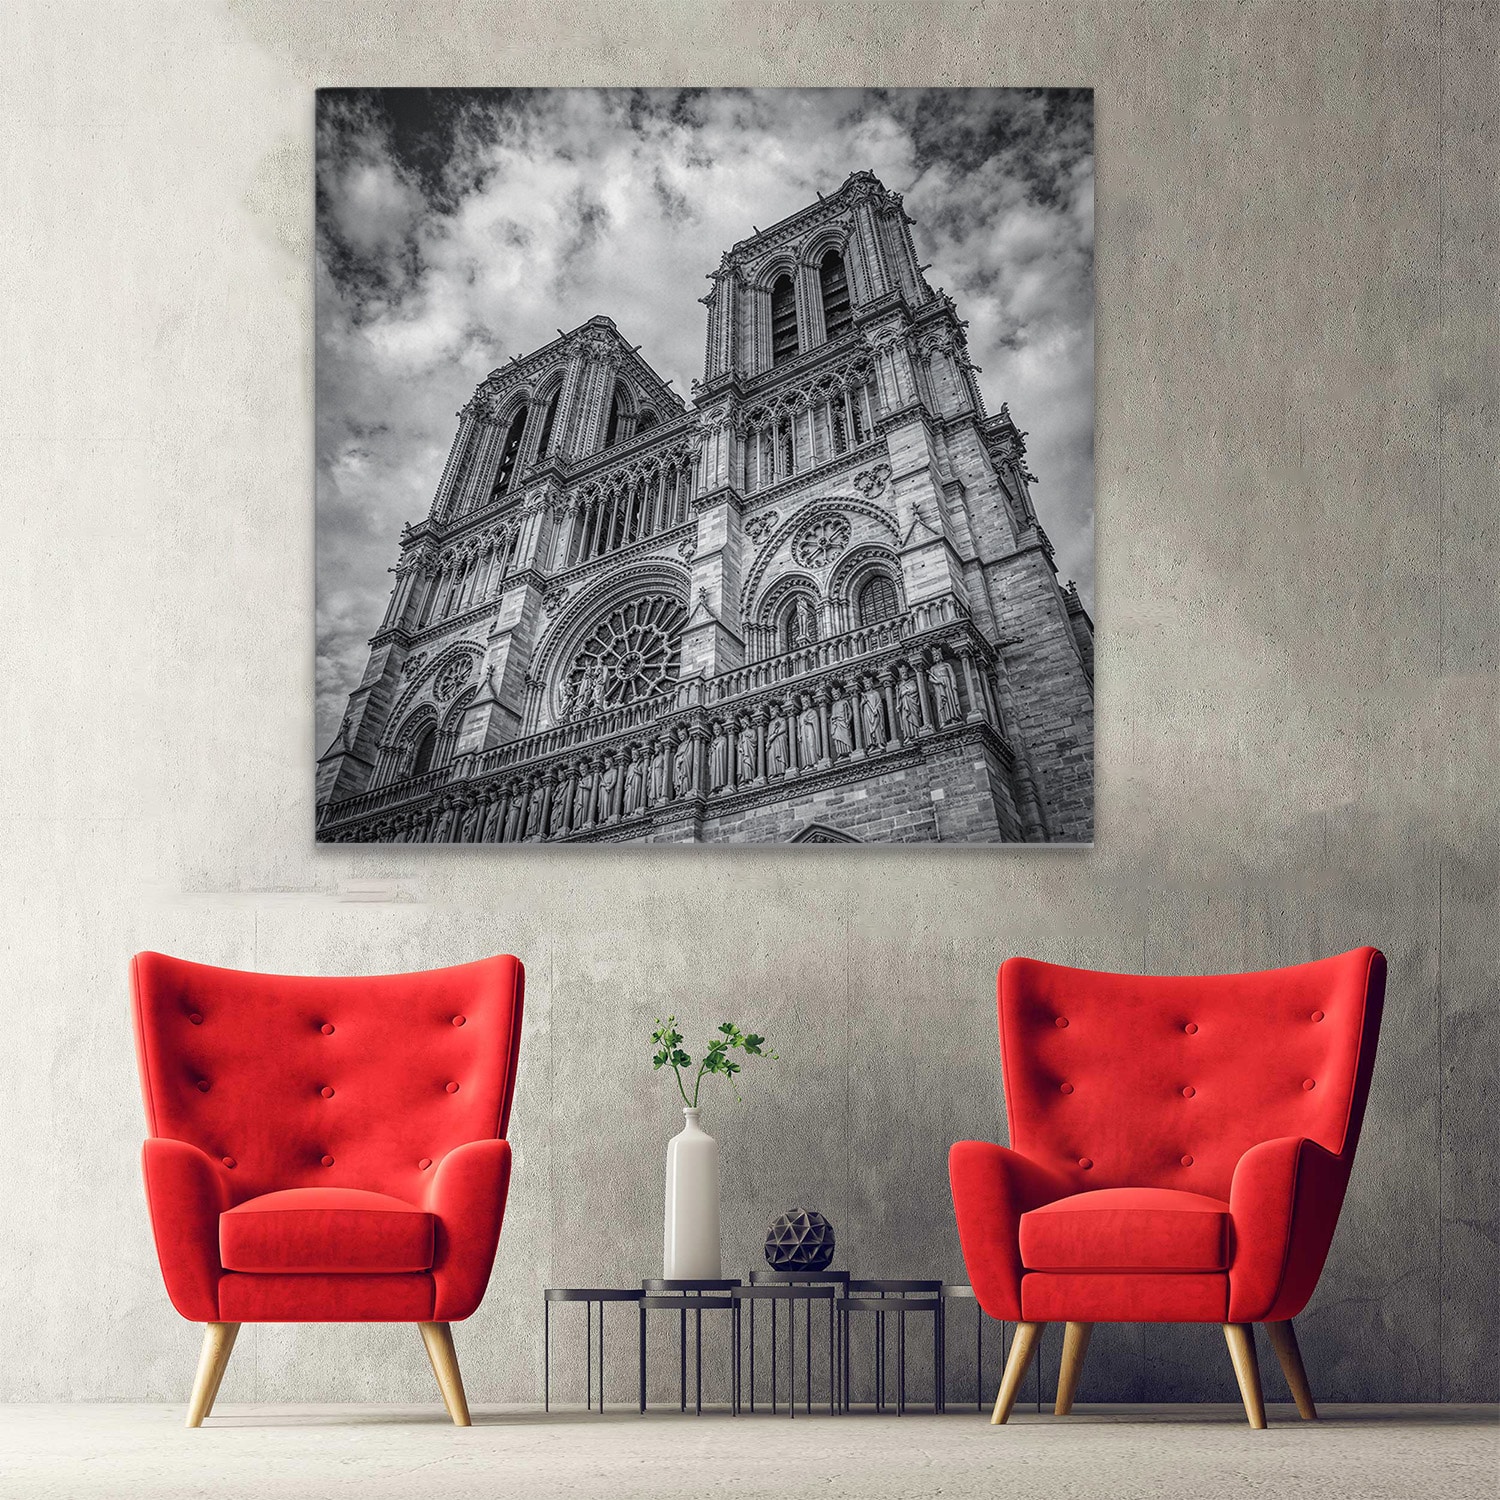 Tablou Notre Dame Paris Franta alb negru 1523 hol - Afis Poster Tablou Castelul Neuschwanstein la apus Germania pentru living casa birou bucatarie livrare in 24 ore la cel mai bun pret.